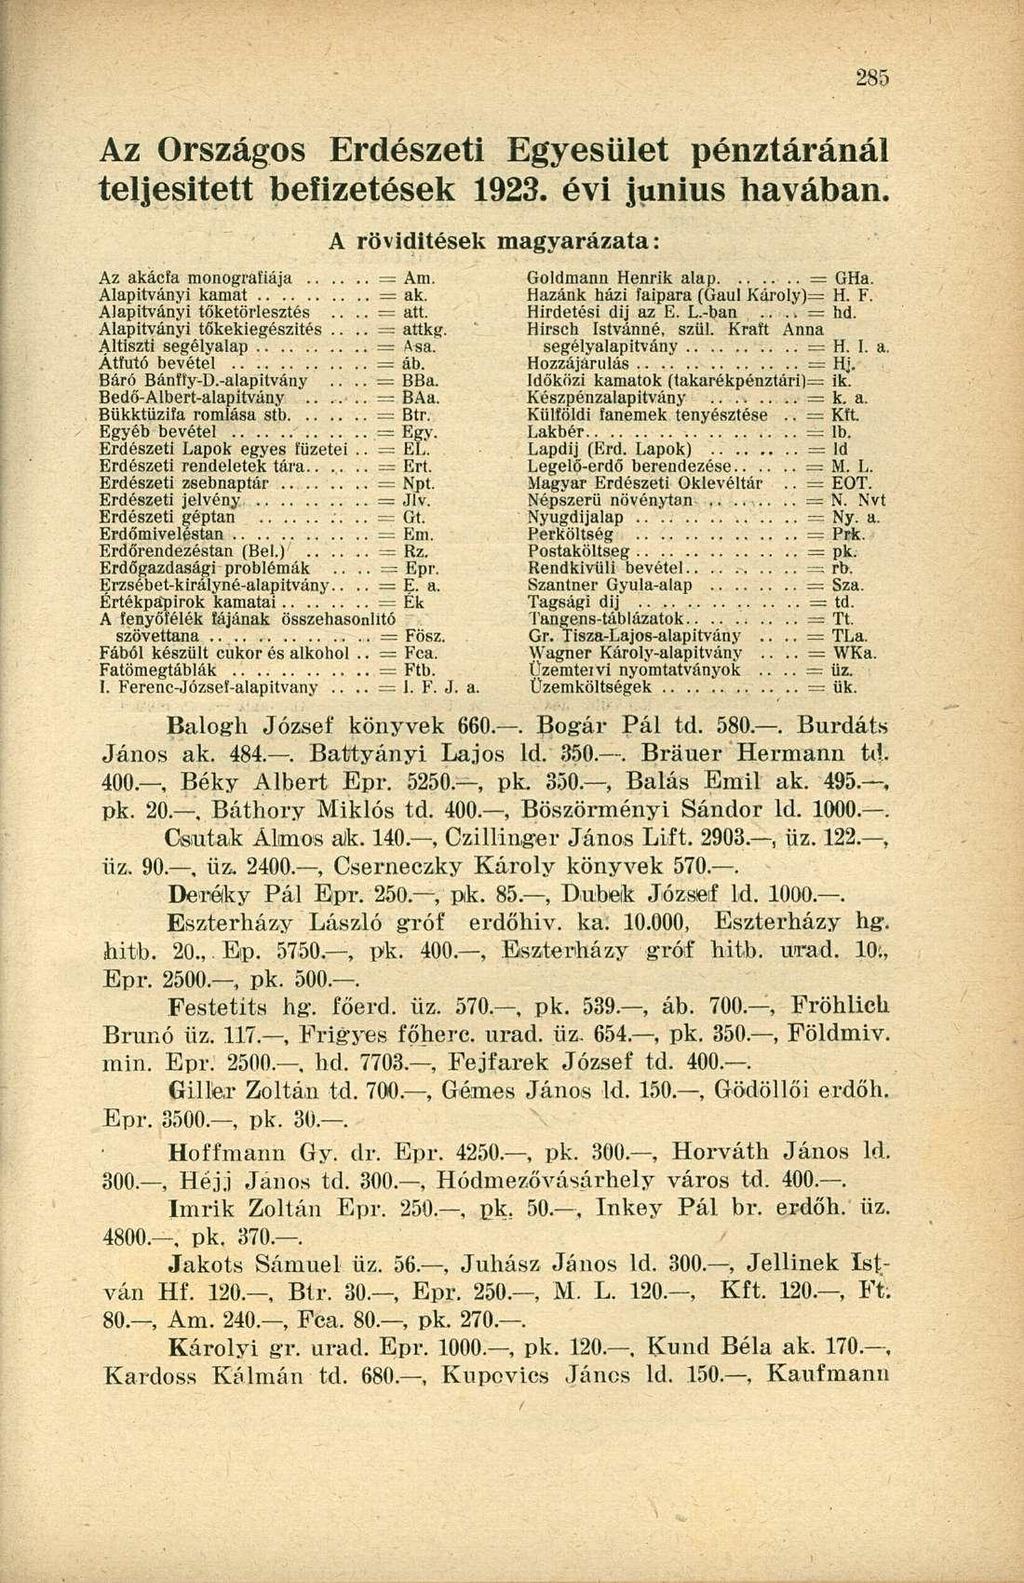 Az Országos Erdészeti Egyesület pénztáránál teljesített befizetések 1923. évi június havában. Az akácfa monográfiája = Am. Alapítványi kamat = ak. Alapítványi töketörlesztés.... = att.